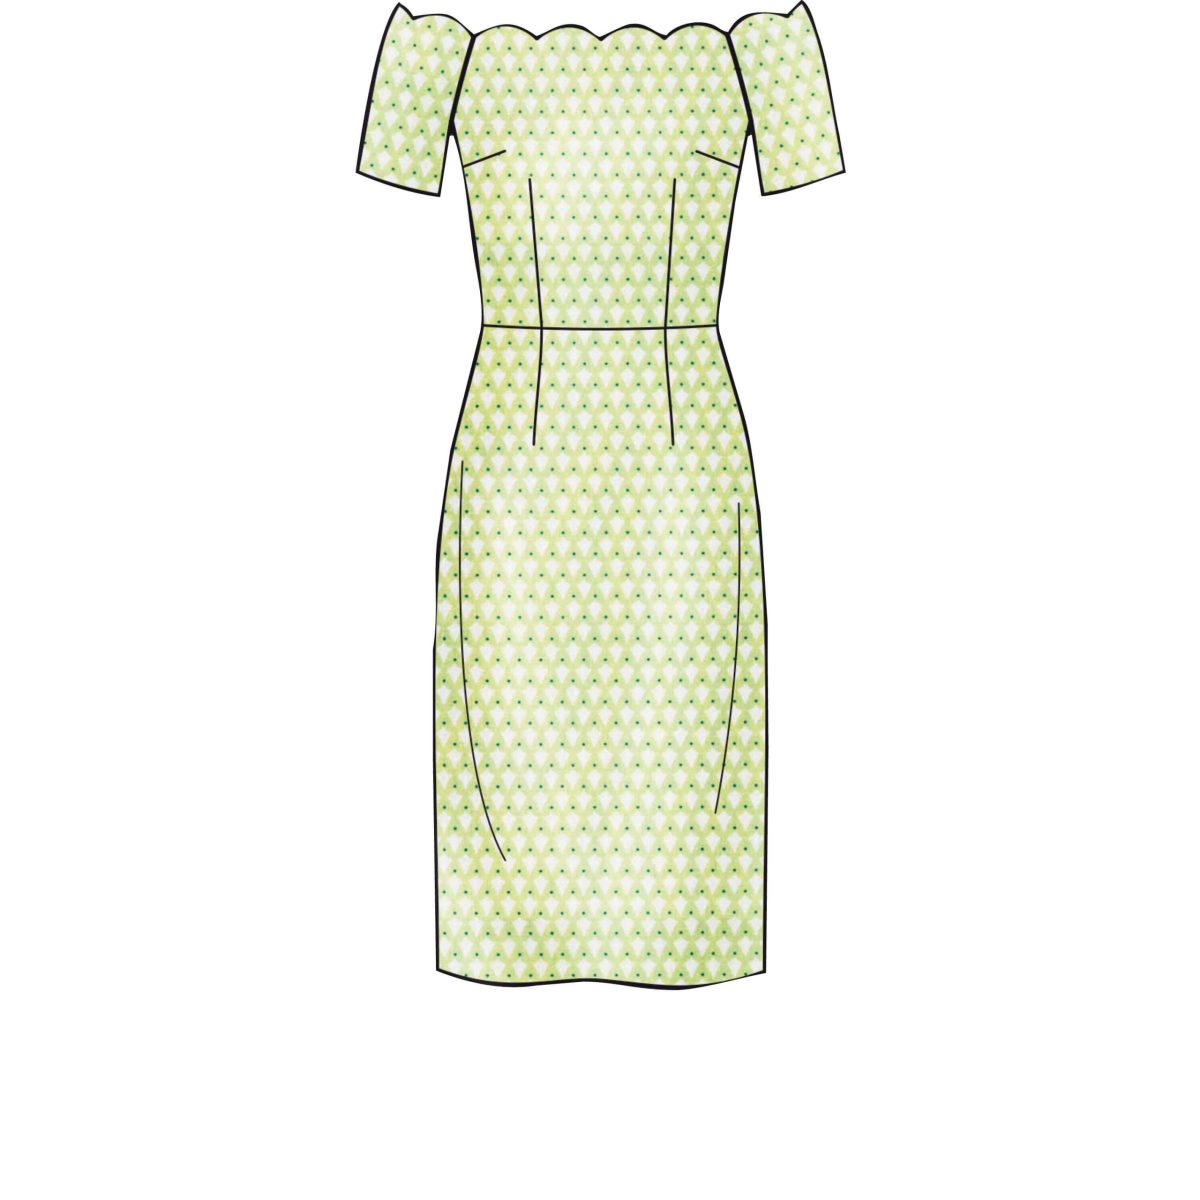 New Look Sewing Pattern N6615 Misses' Dresses